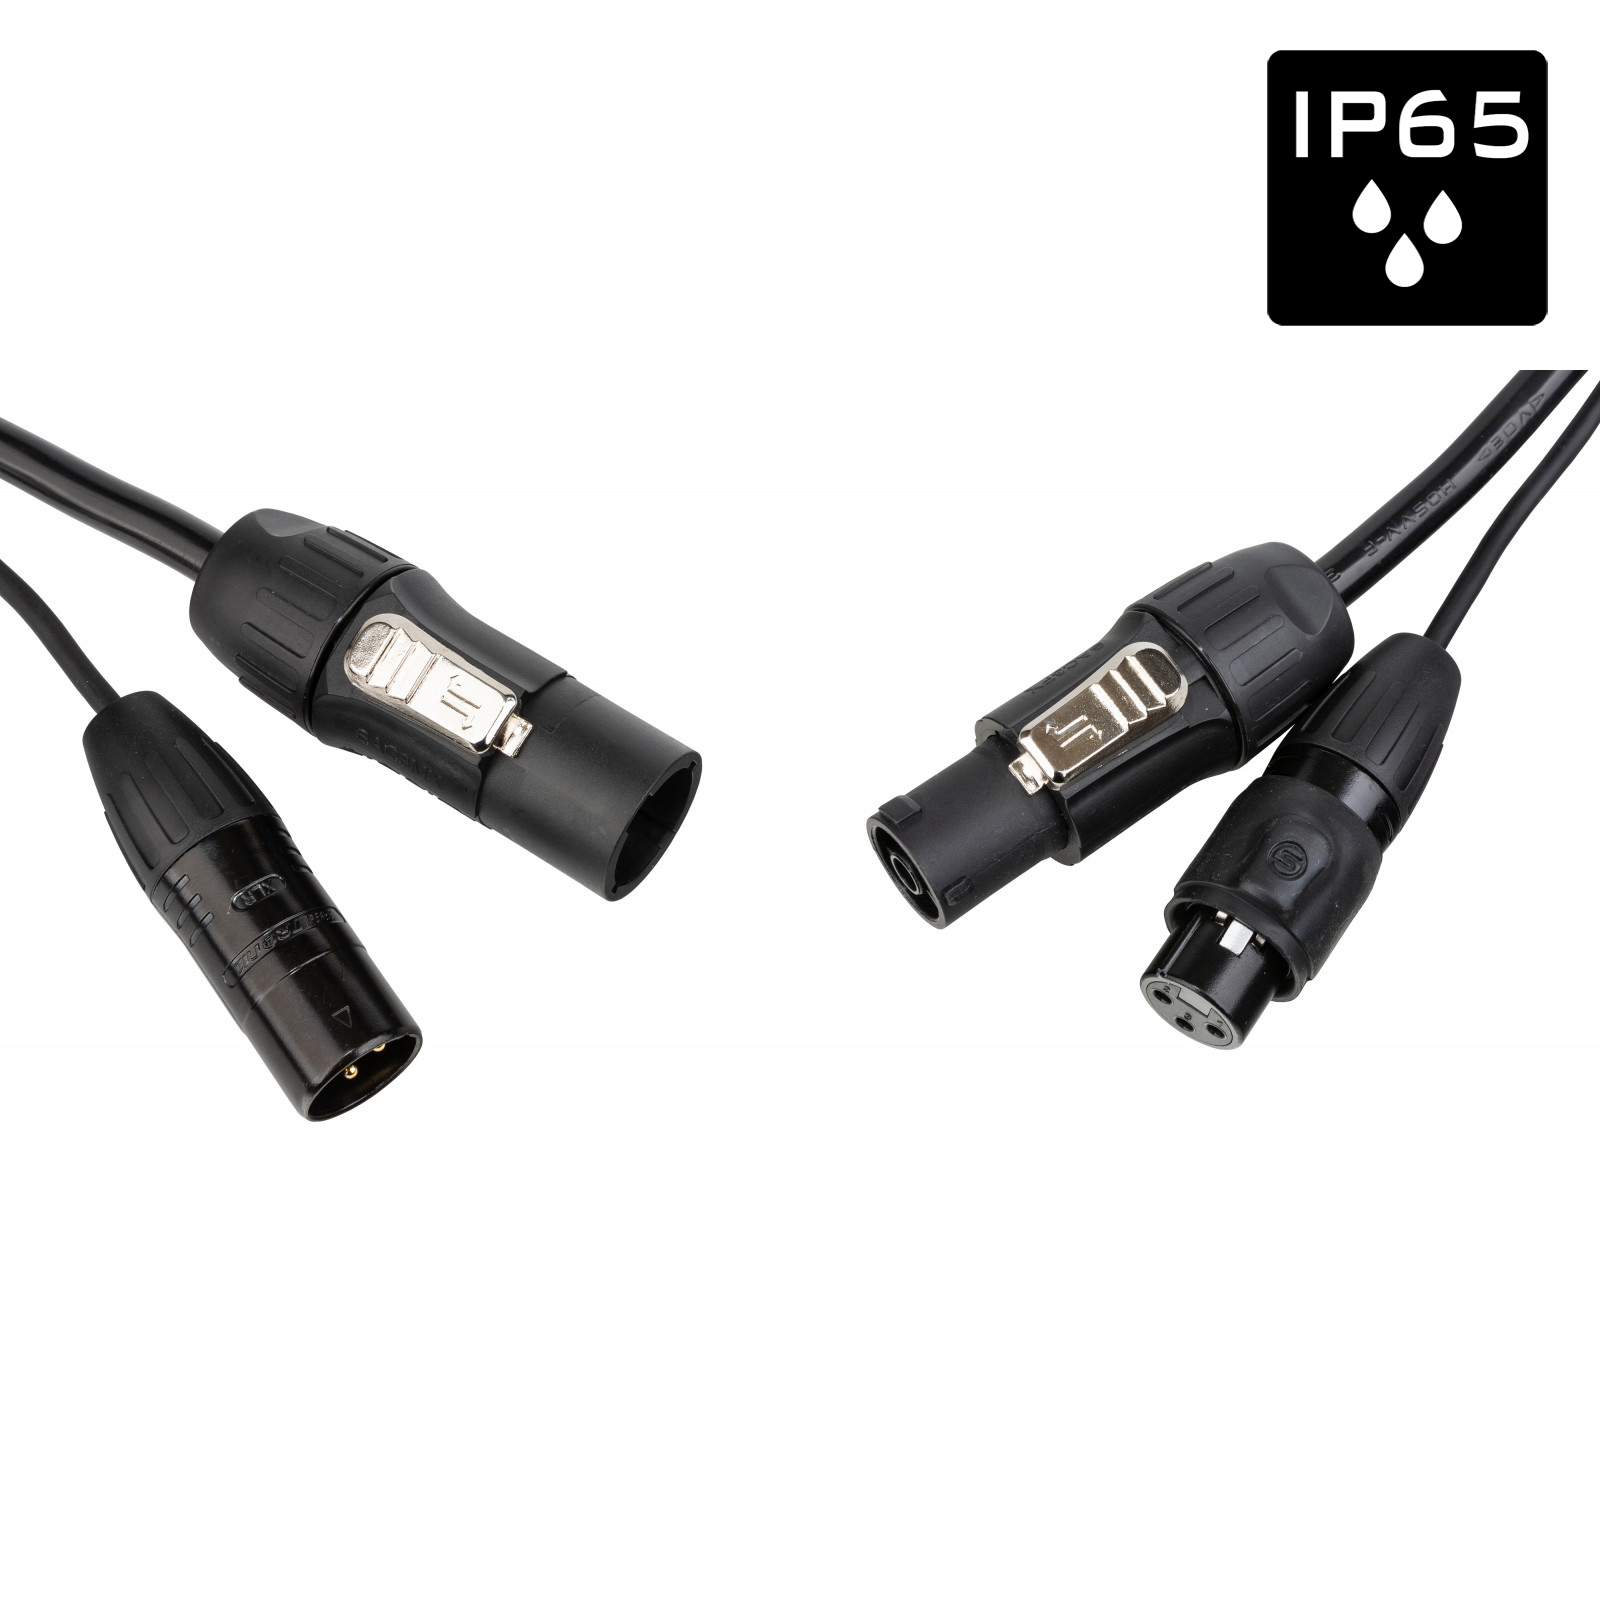 Câble IP65 avec connecteurs Seetronic XLR 3p et compatibles True1 - Longueur 10m